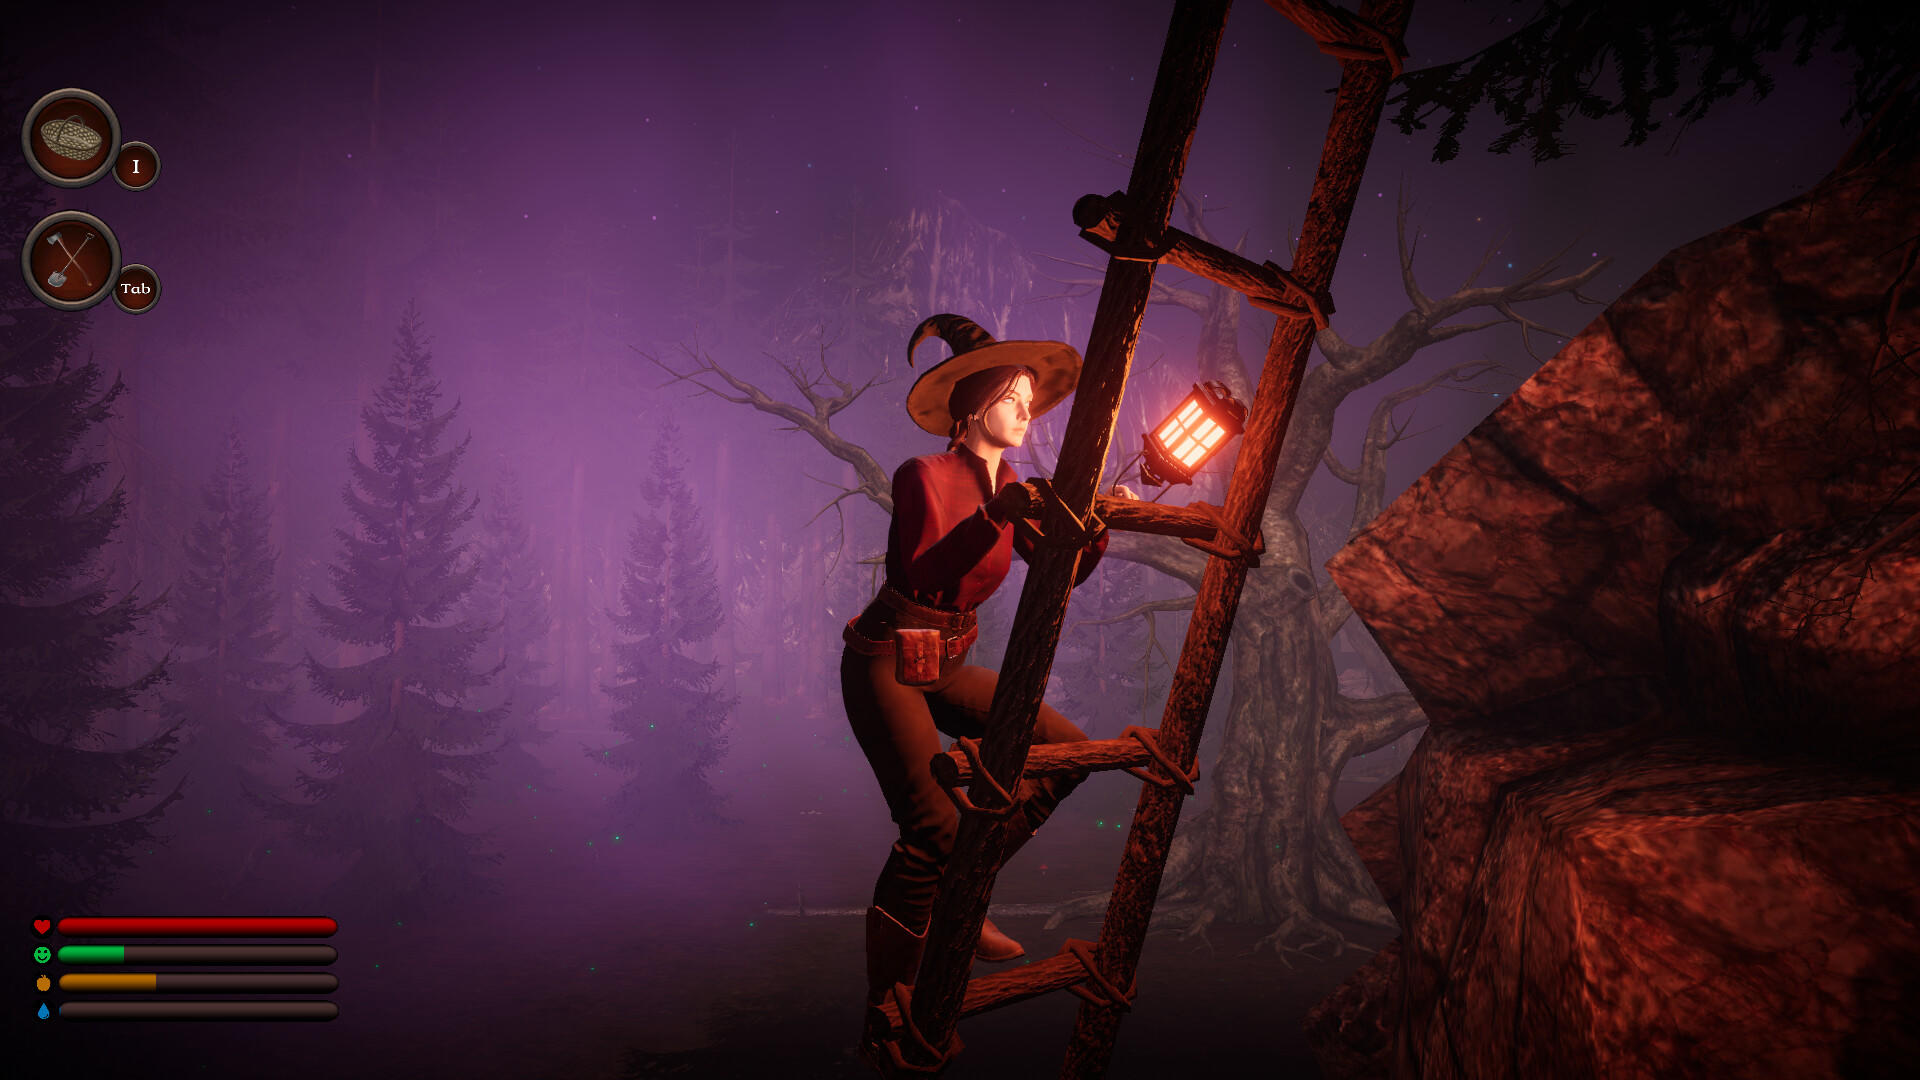 Pumpkin Woods screenshot game